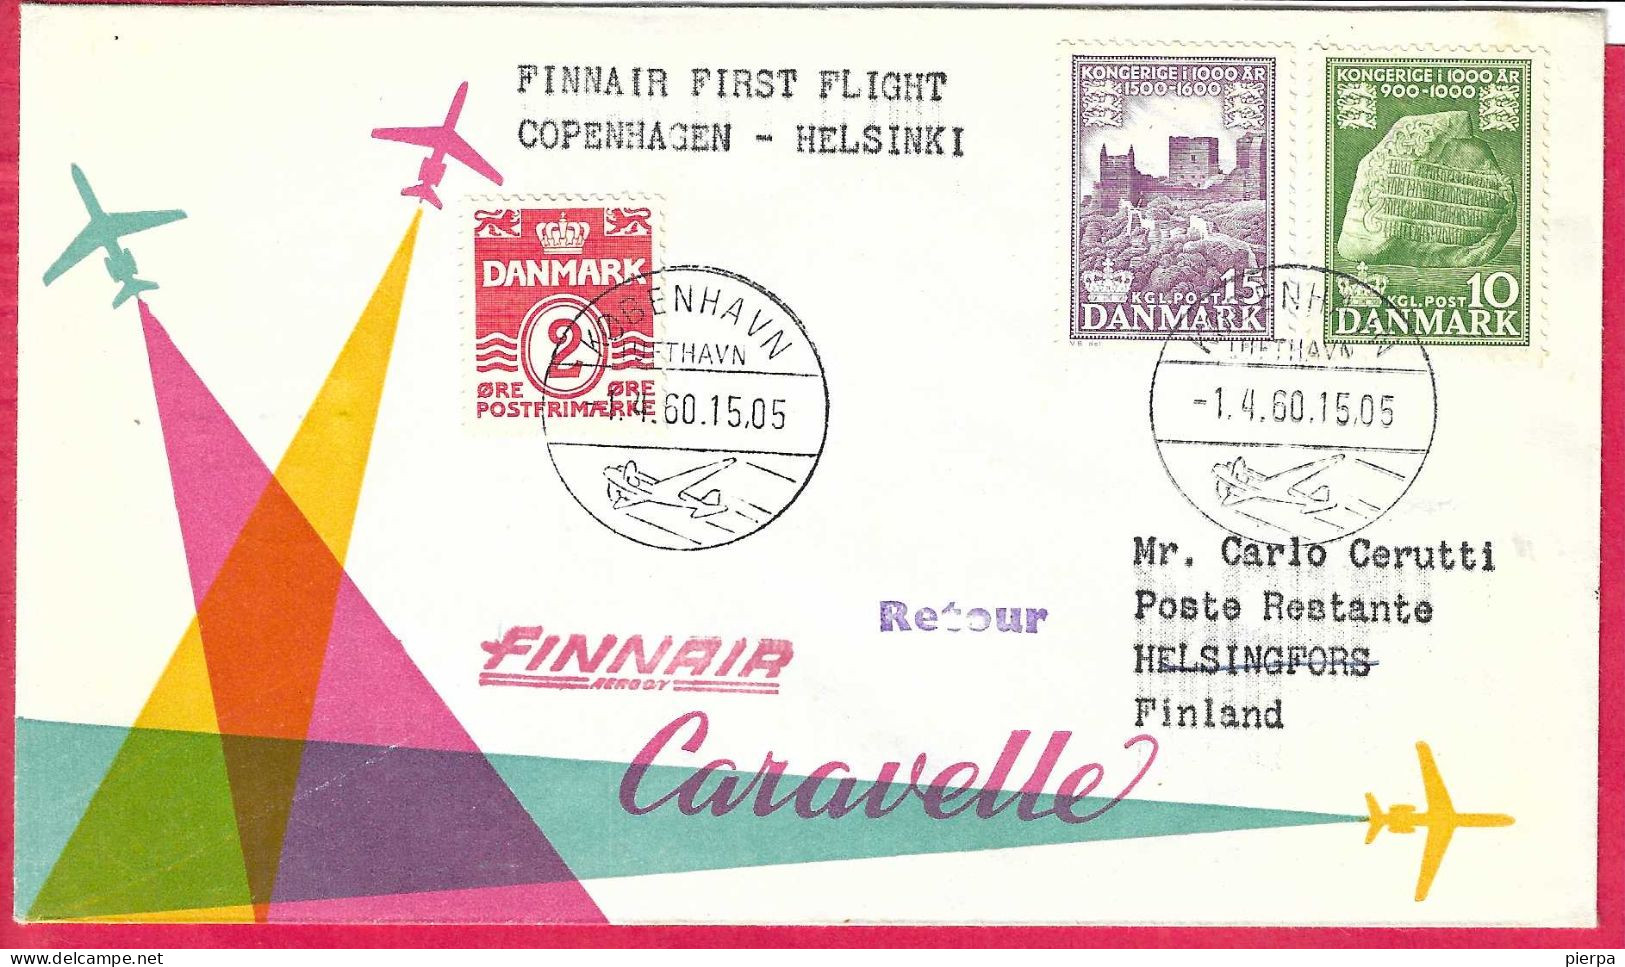 DANMARK - FIRST CARAVELLE FLIGHT - FINNAIR - FROM KOBENHAVN TO HELSINKY *1.4.60* ON OFFICIAL COVER - Posta Aerea